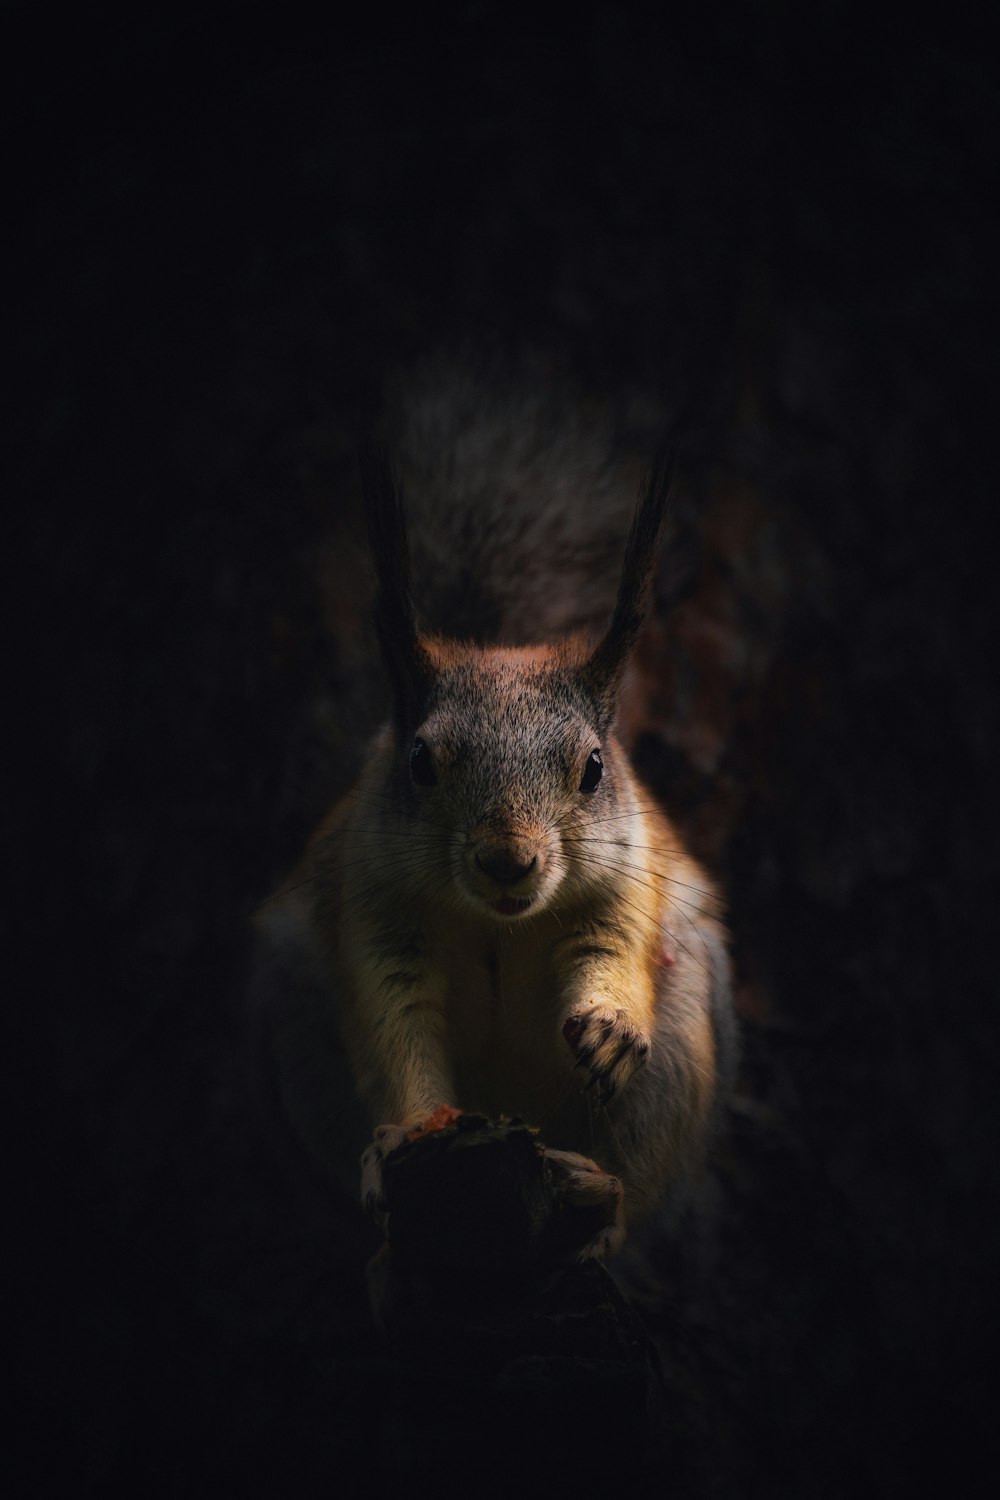 나무 줄기 위에 앉아있는 다람쥐